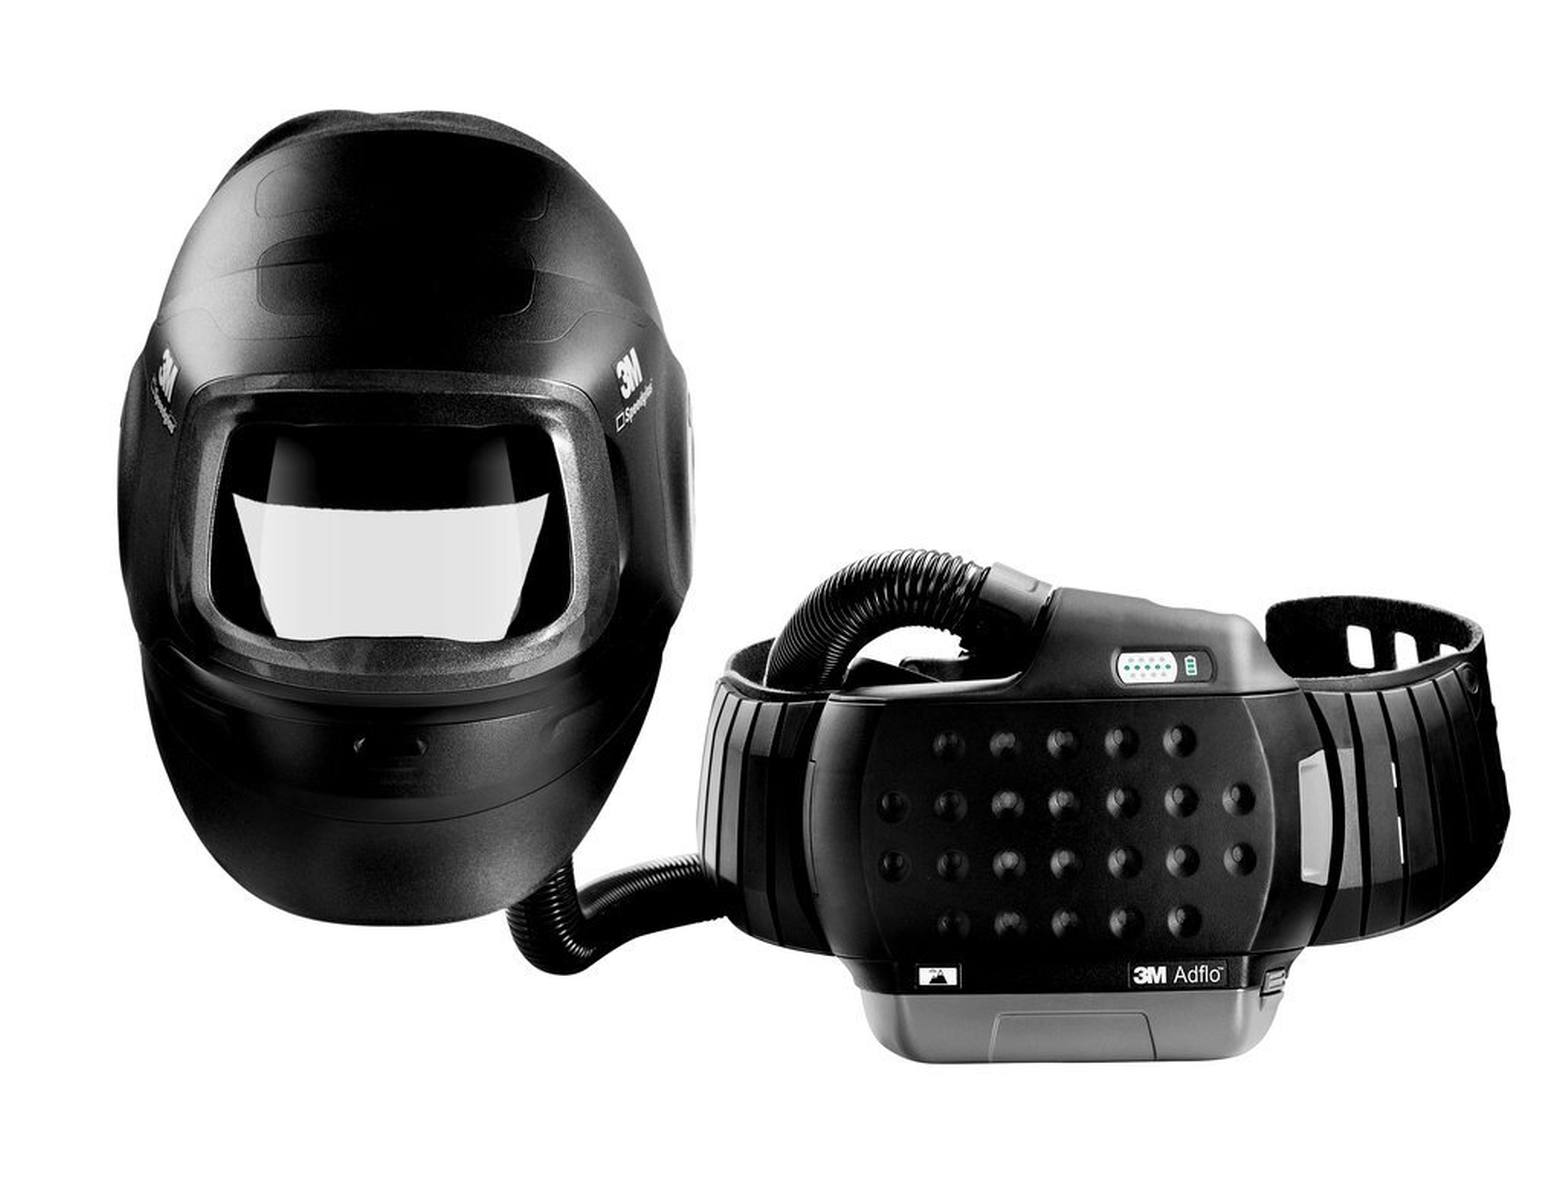 3M Speedglas Maschera per saldatura ad alte prestazioni G5-01 con protezione respiratoria a soffio 3M Adflo, batteria ad alte prestazioni e borsa per la conservazione, senza filtro di saldatura, H617800